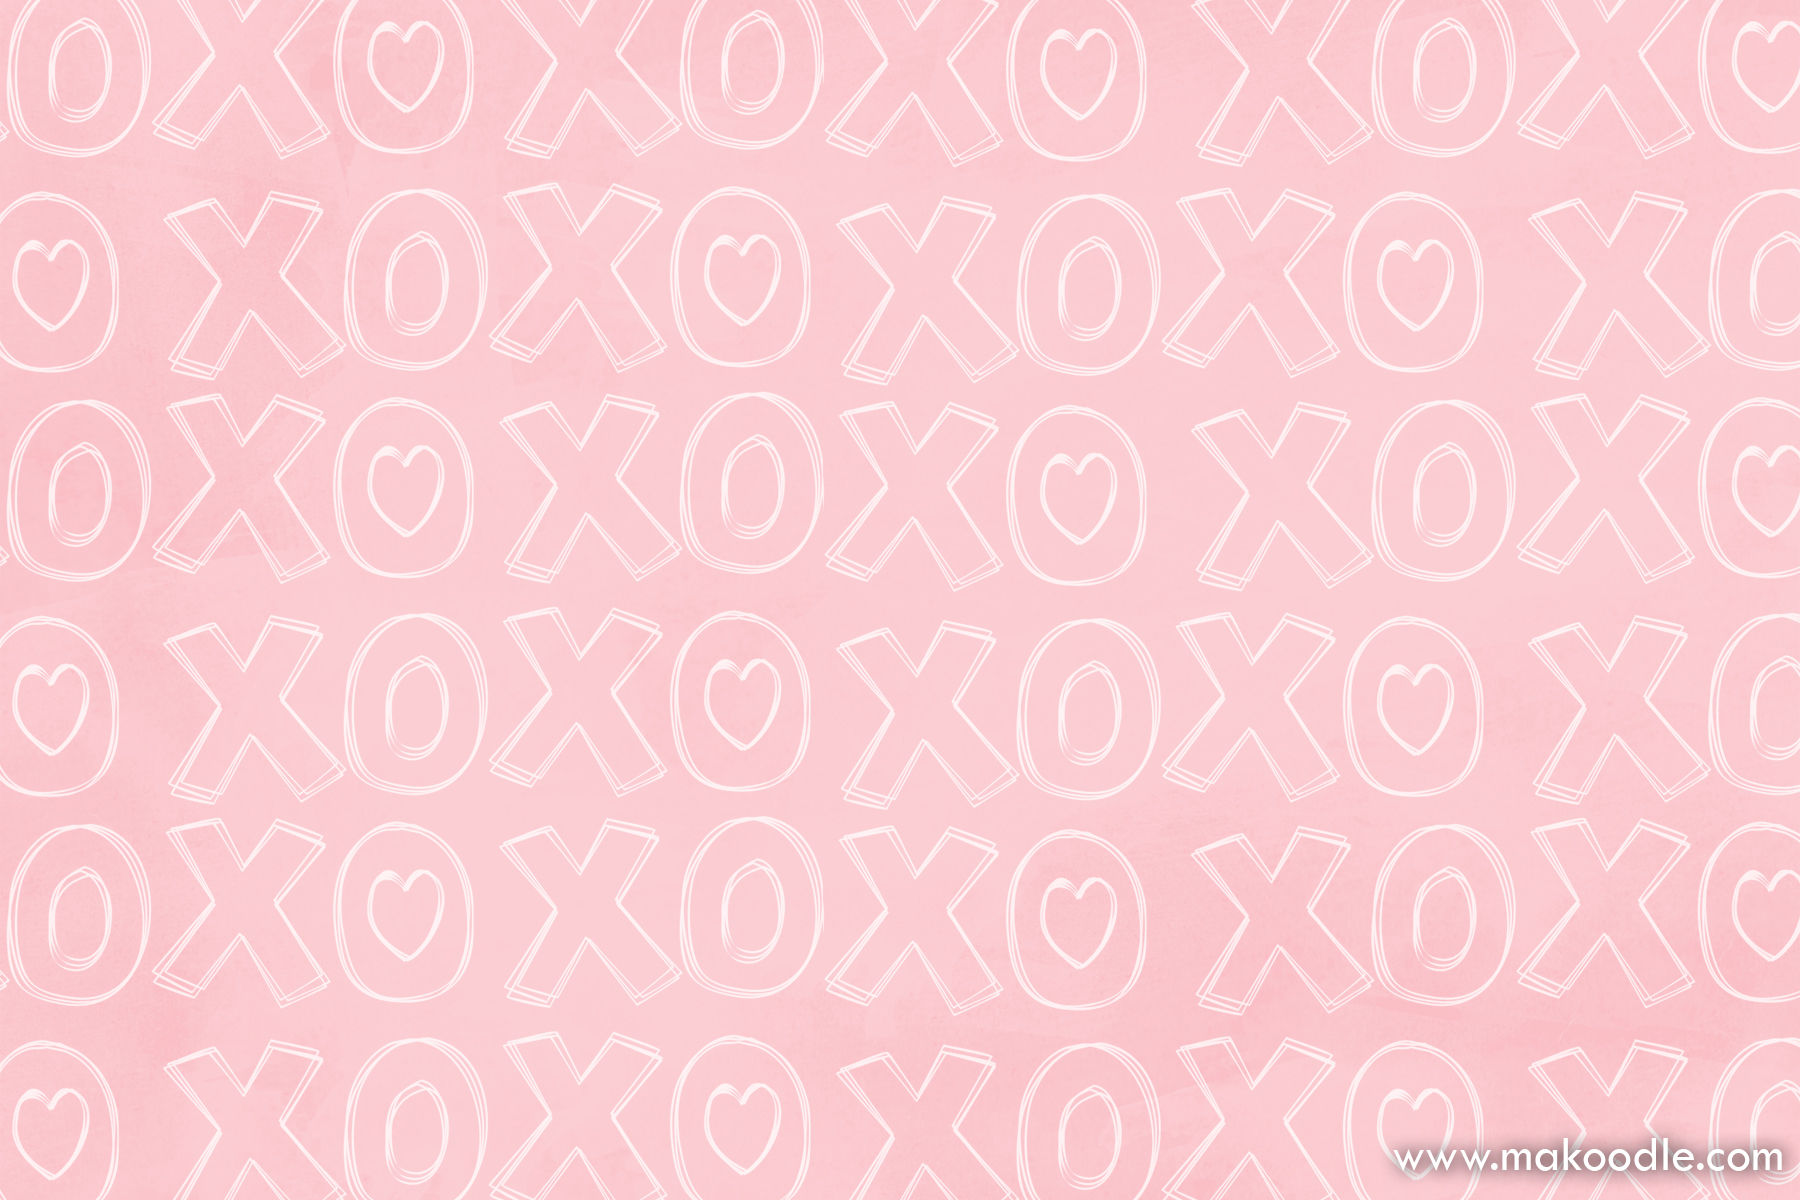 Tặng yêu thương cho người thân và bạn bè với bộ tem XOXO Love được tải về miễn phí cho ngày Valentine. Đồng hành cùng gia đình mình cùng bạn bè trong ngày lễ tình nhân.